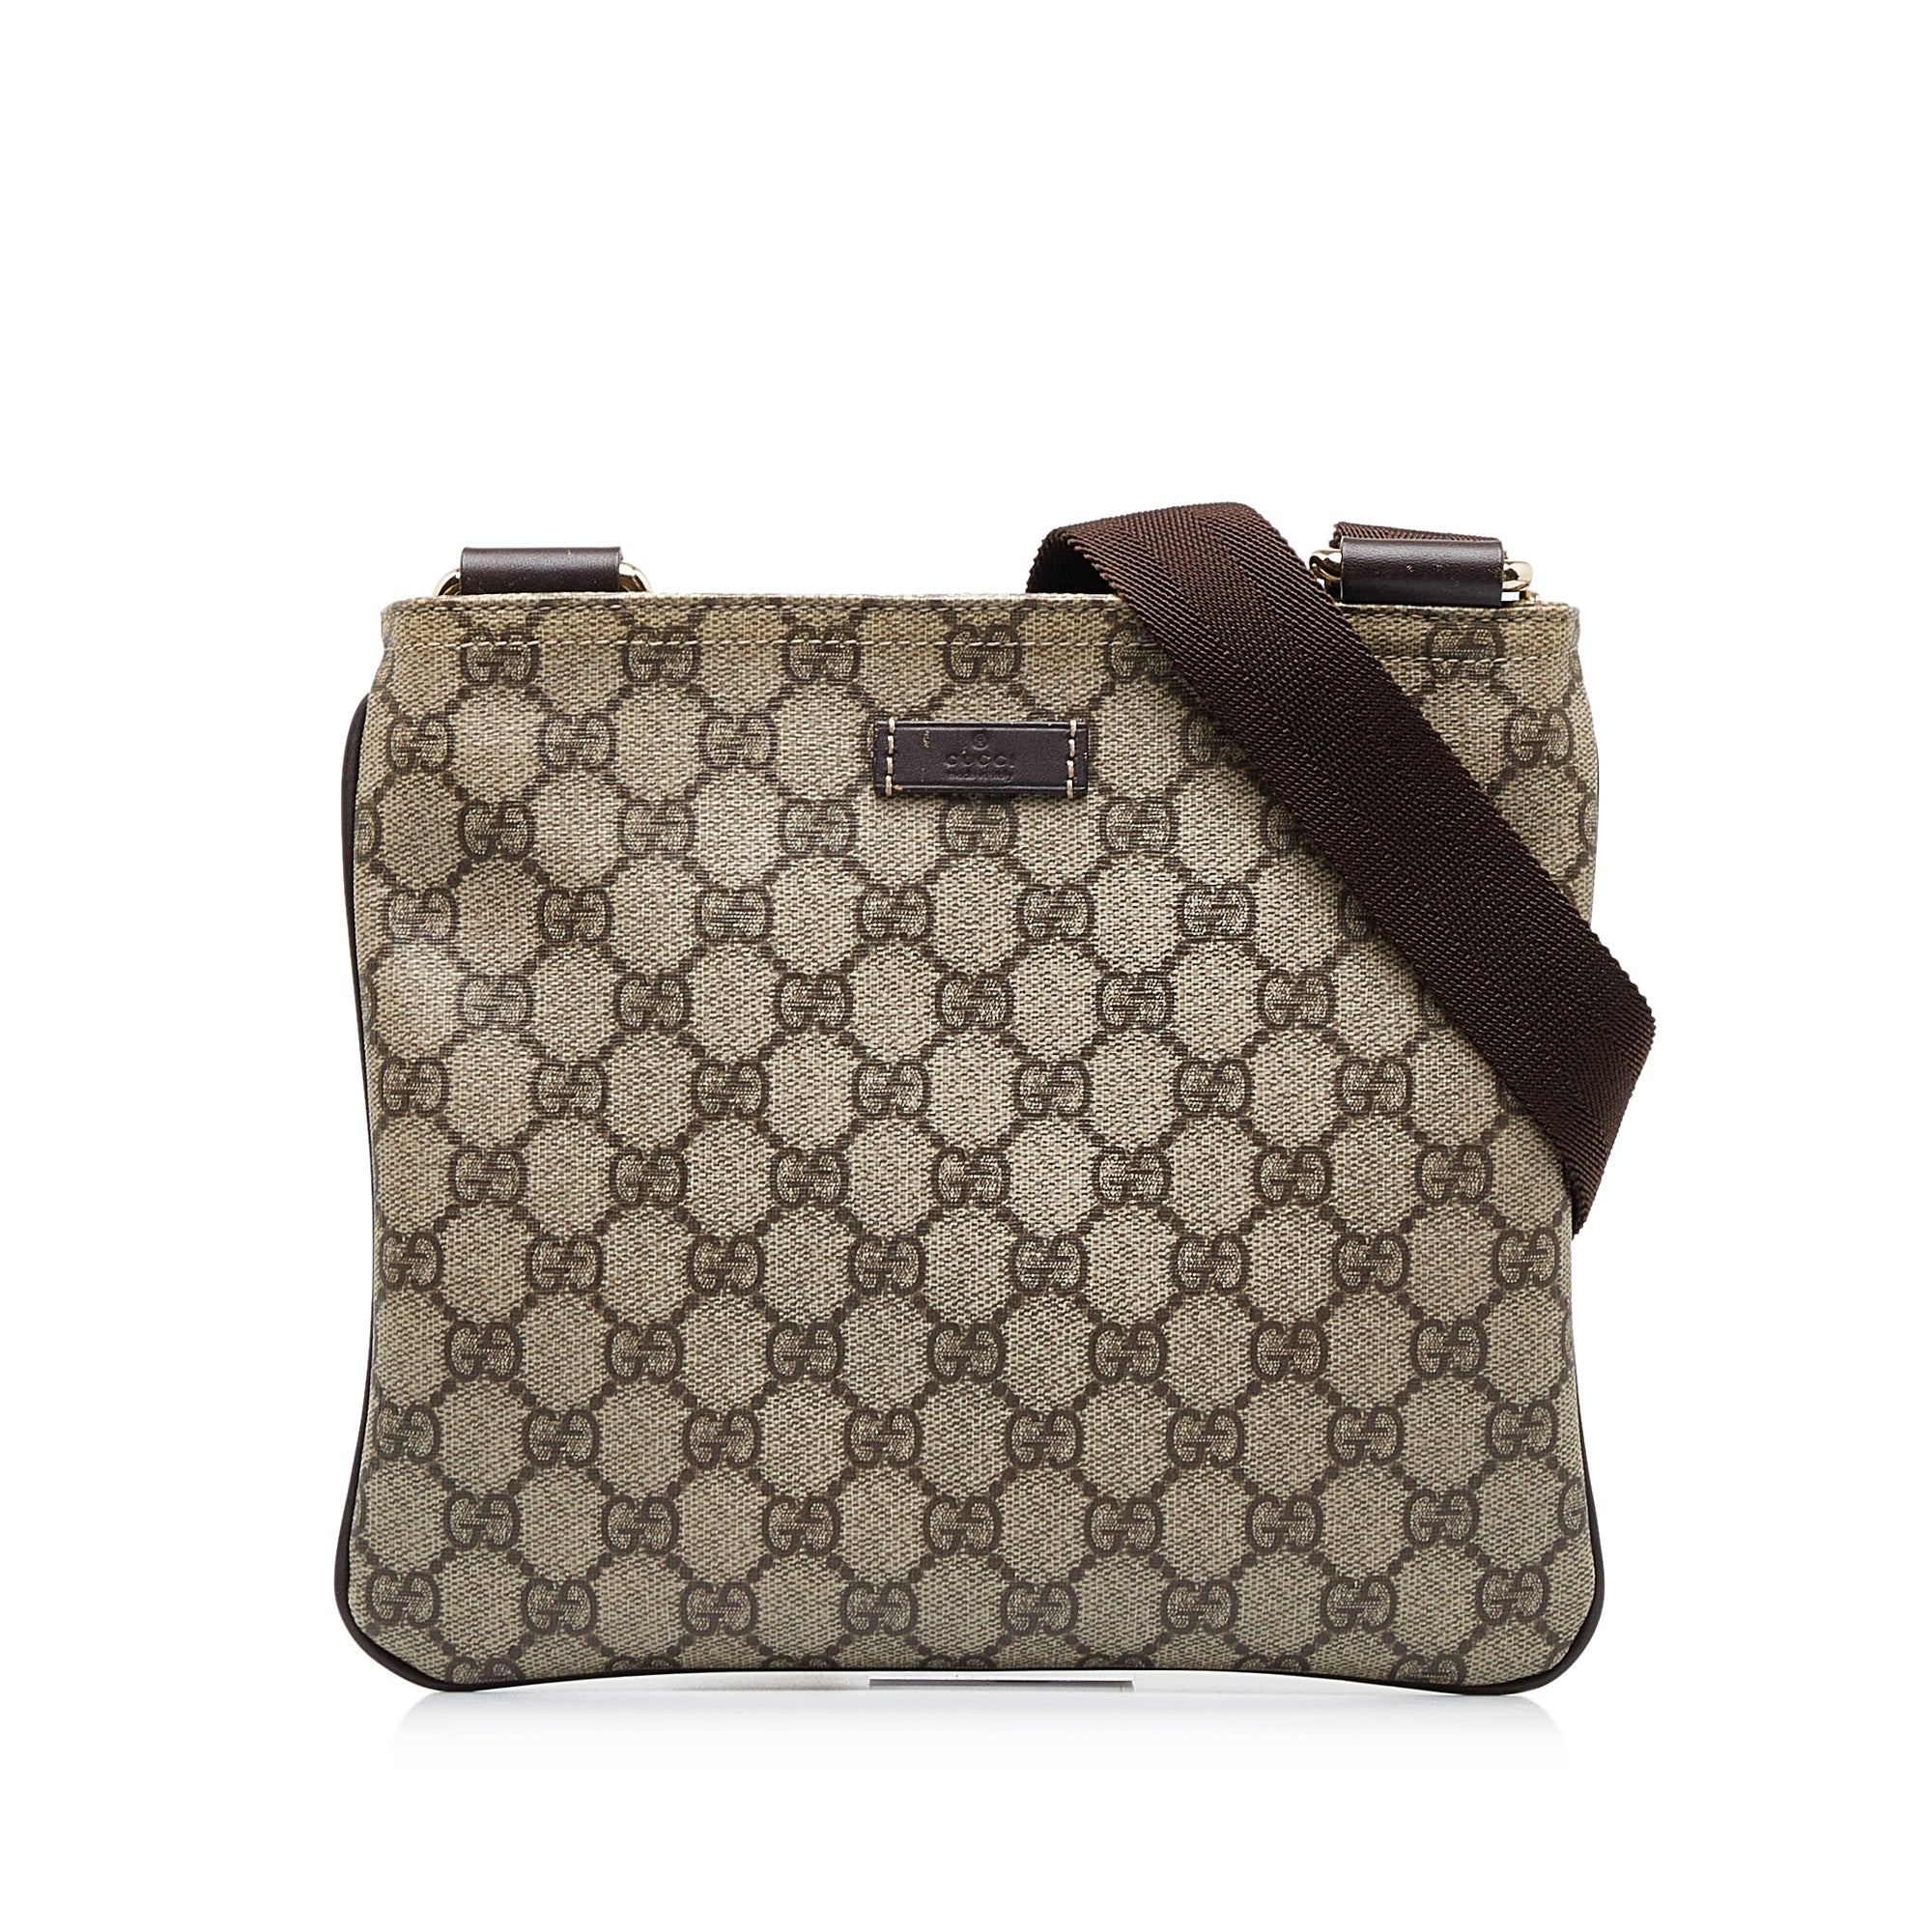 Gucci Vintage Shoulder Bag in GG Supreme